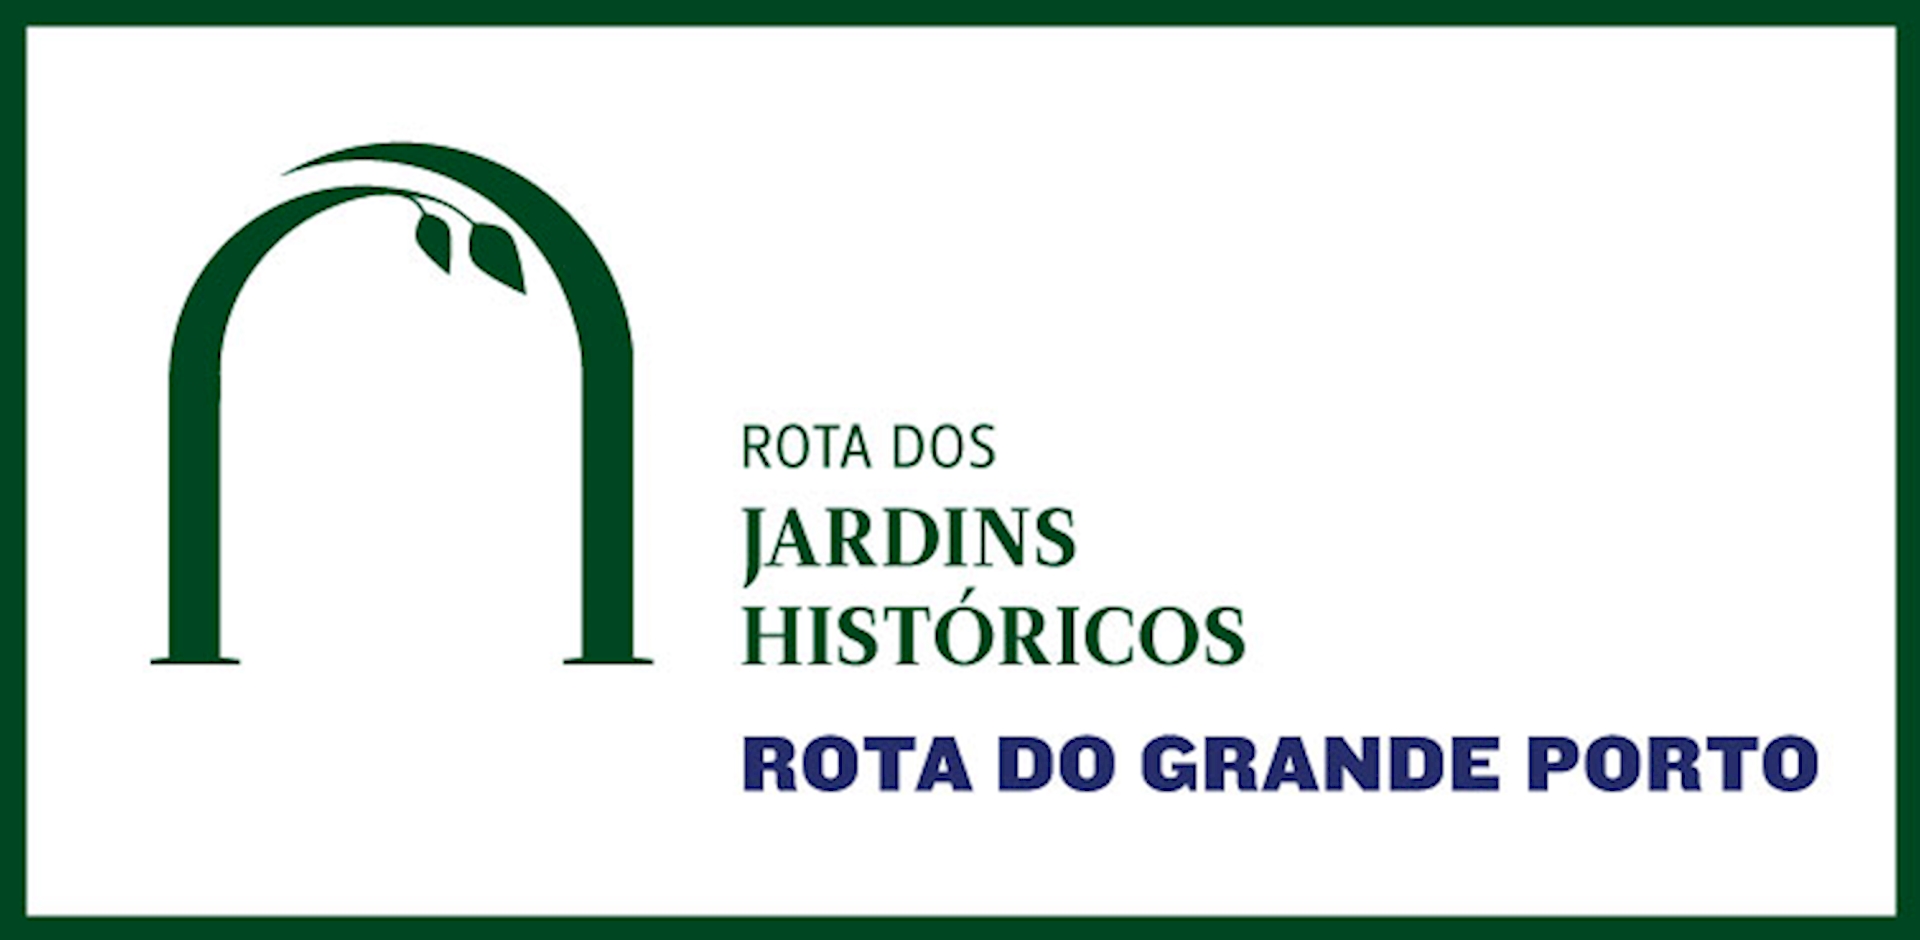 05 Greater Porto Route